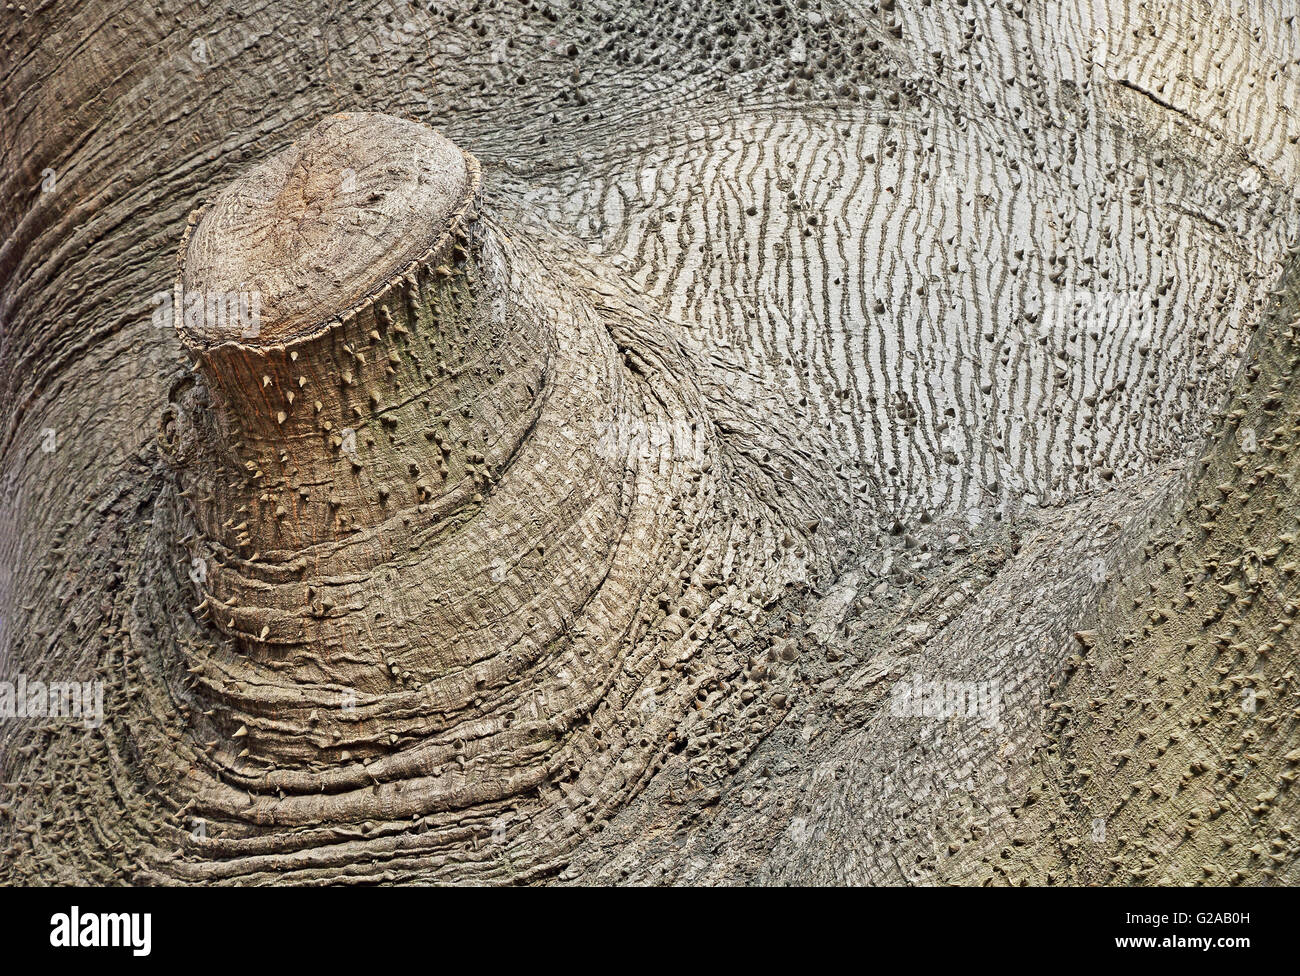 Details der Textur eines riesigen Kapok-Baumes mit Zweig abgeschnitten hautnah Stockfoto